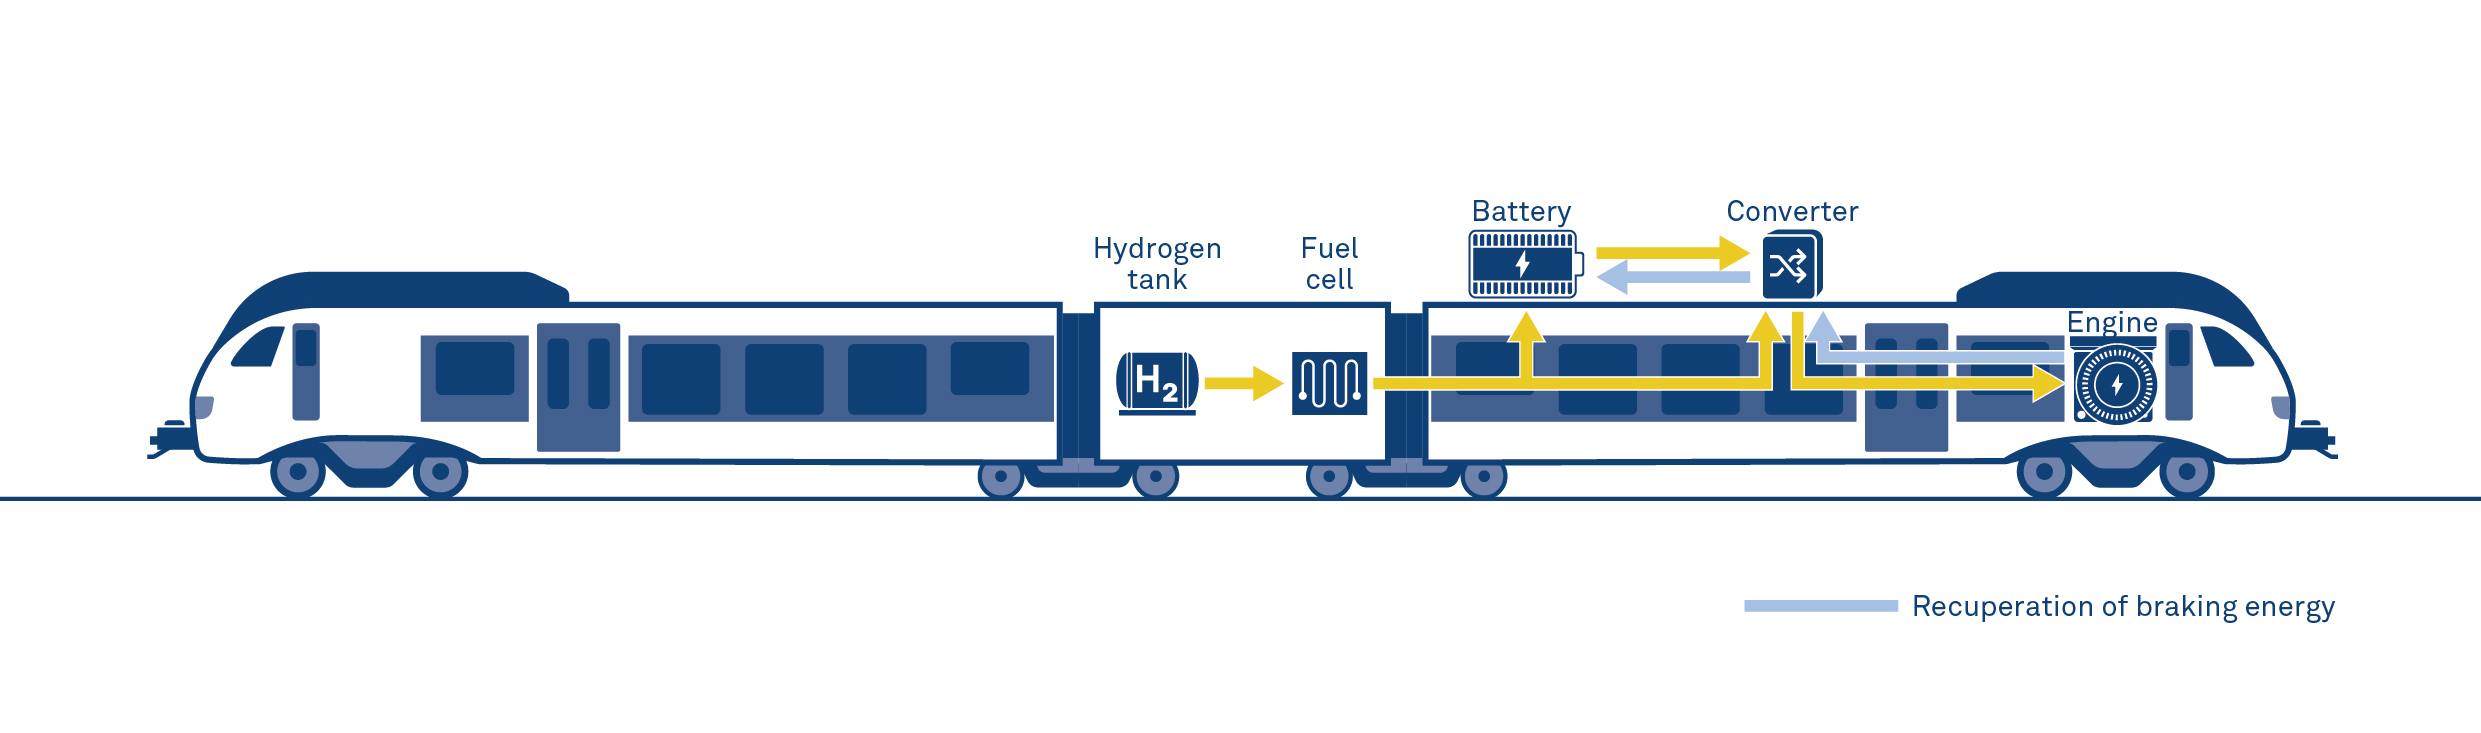 Stadler flirt h2氢动力火车